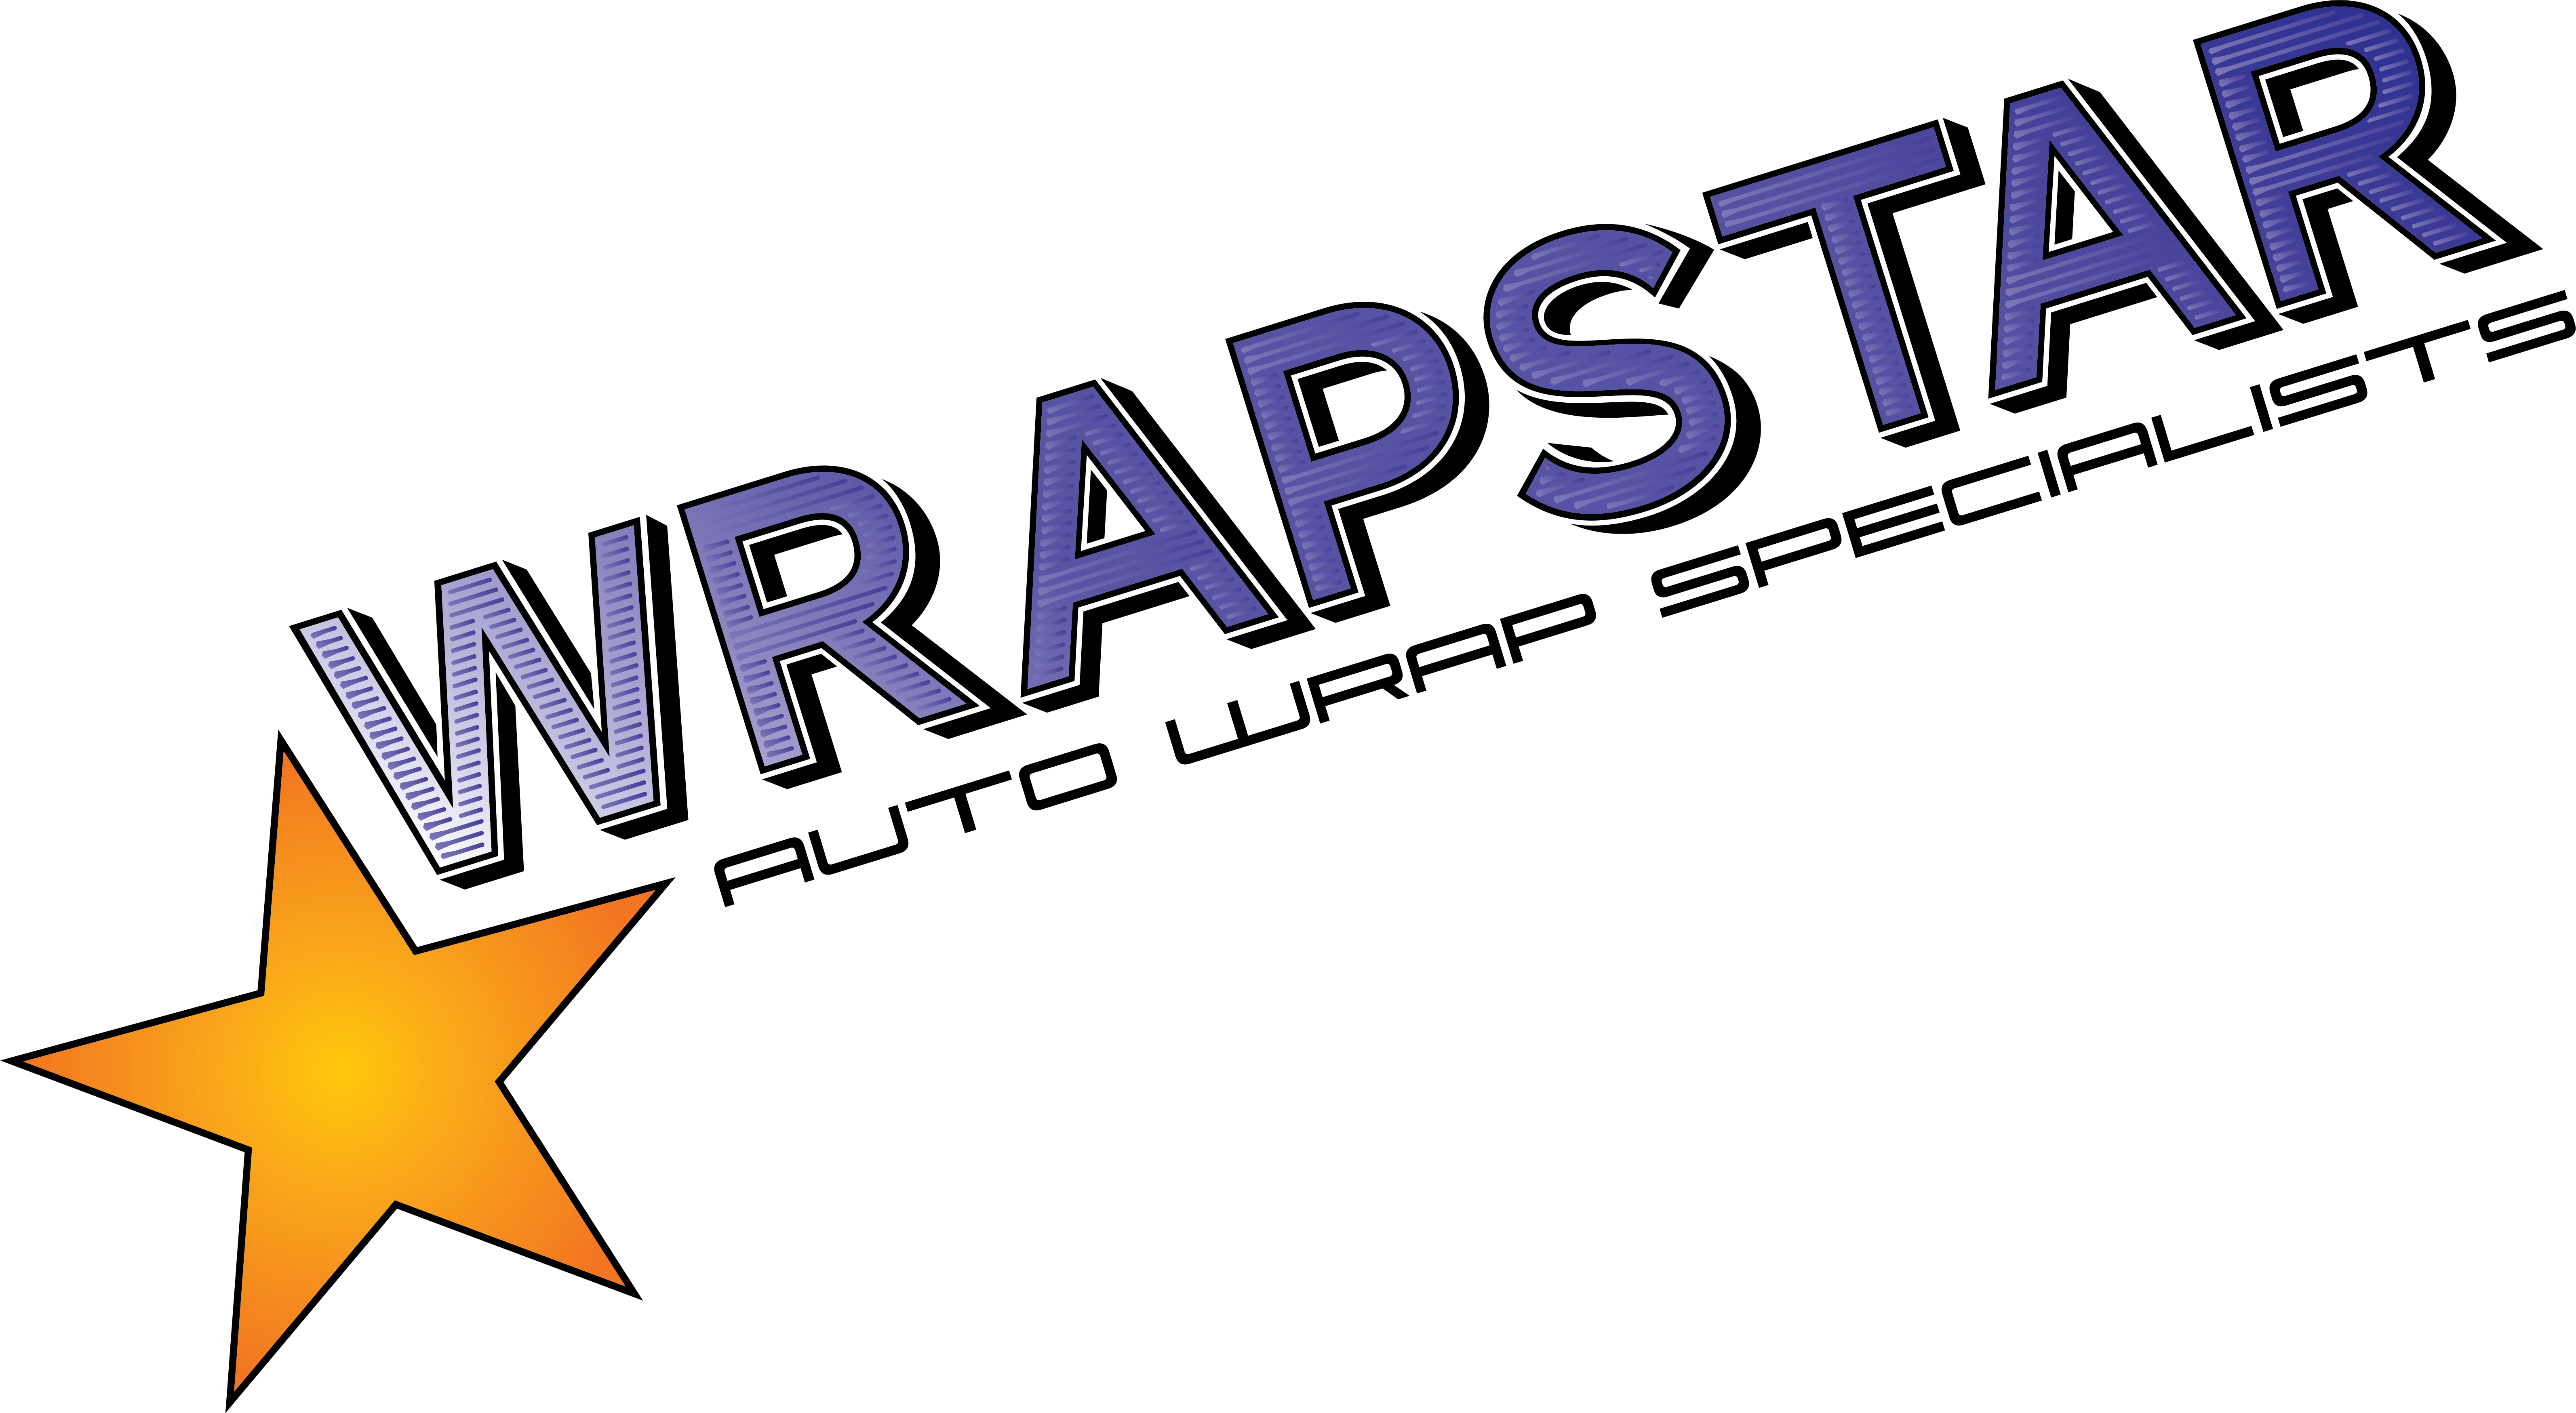 Bill Lee's Wrap Star<br />
Auto Wrap Specialists